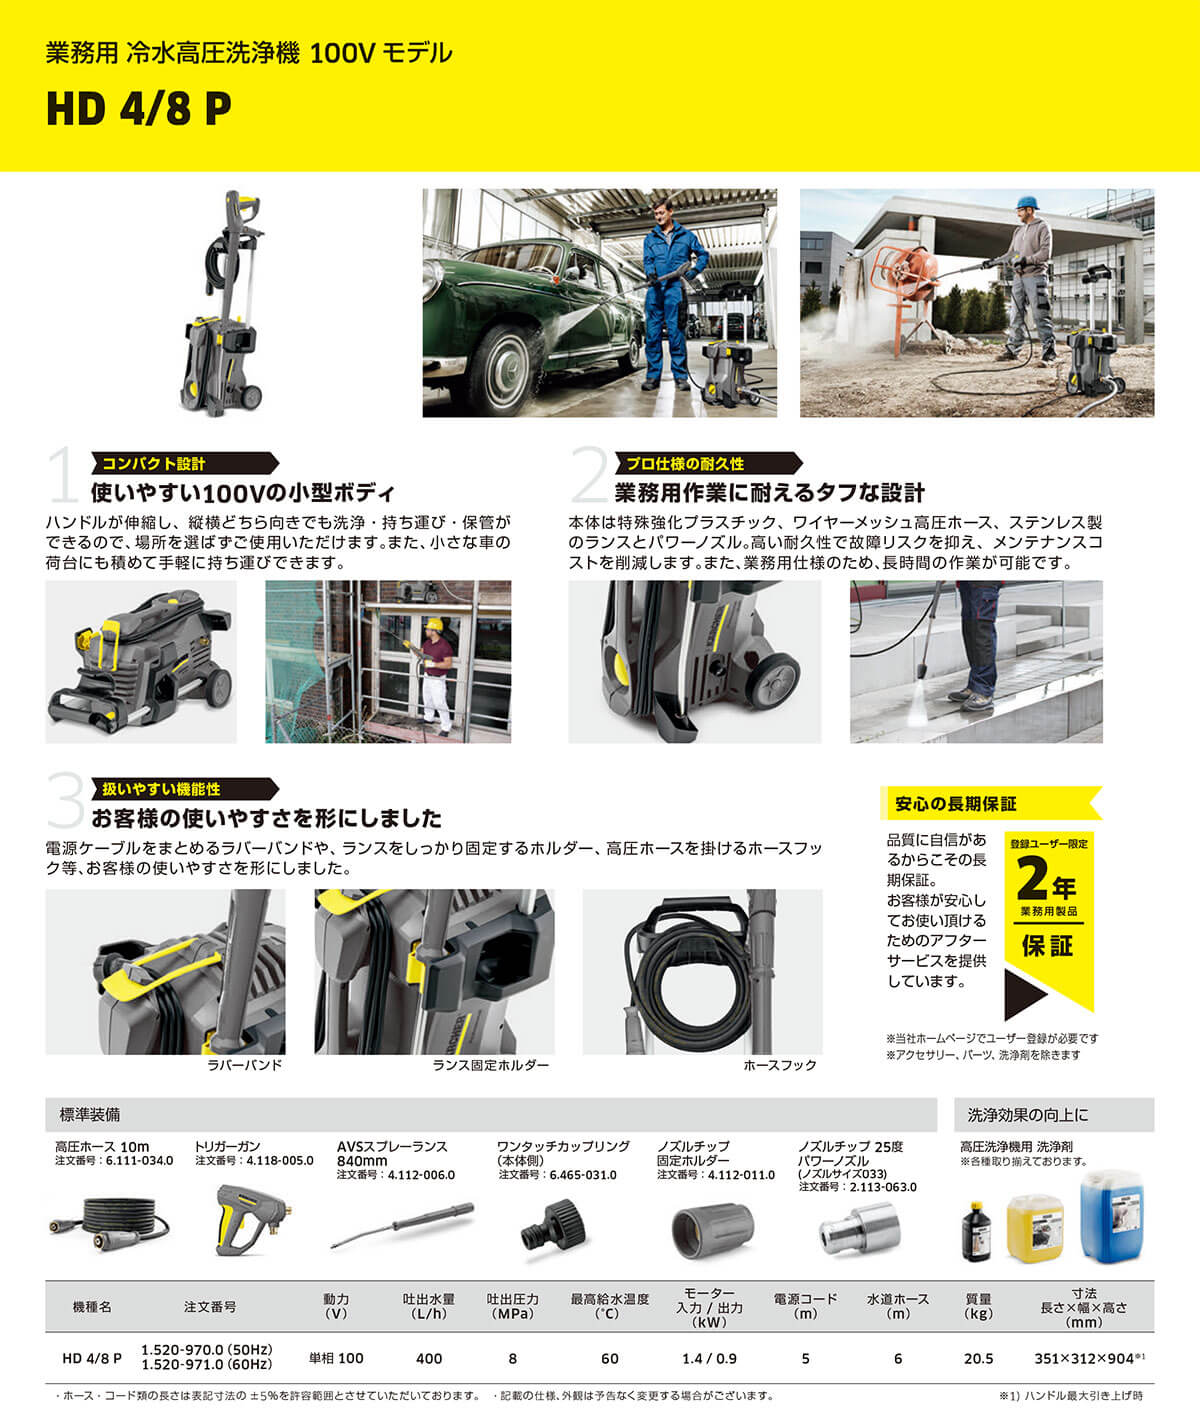 ケルヒャー高圧洗浄機HD 4/8 P商品カタログ画像2